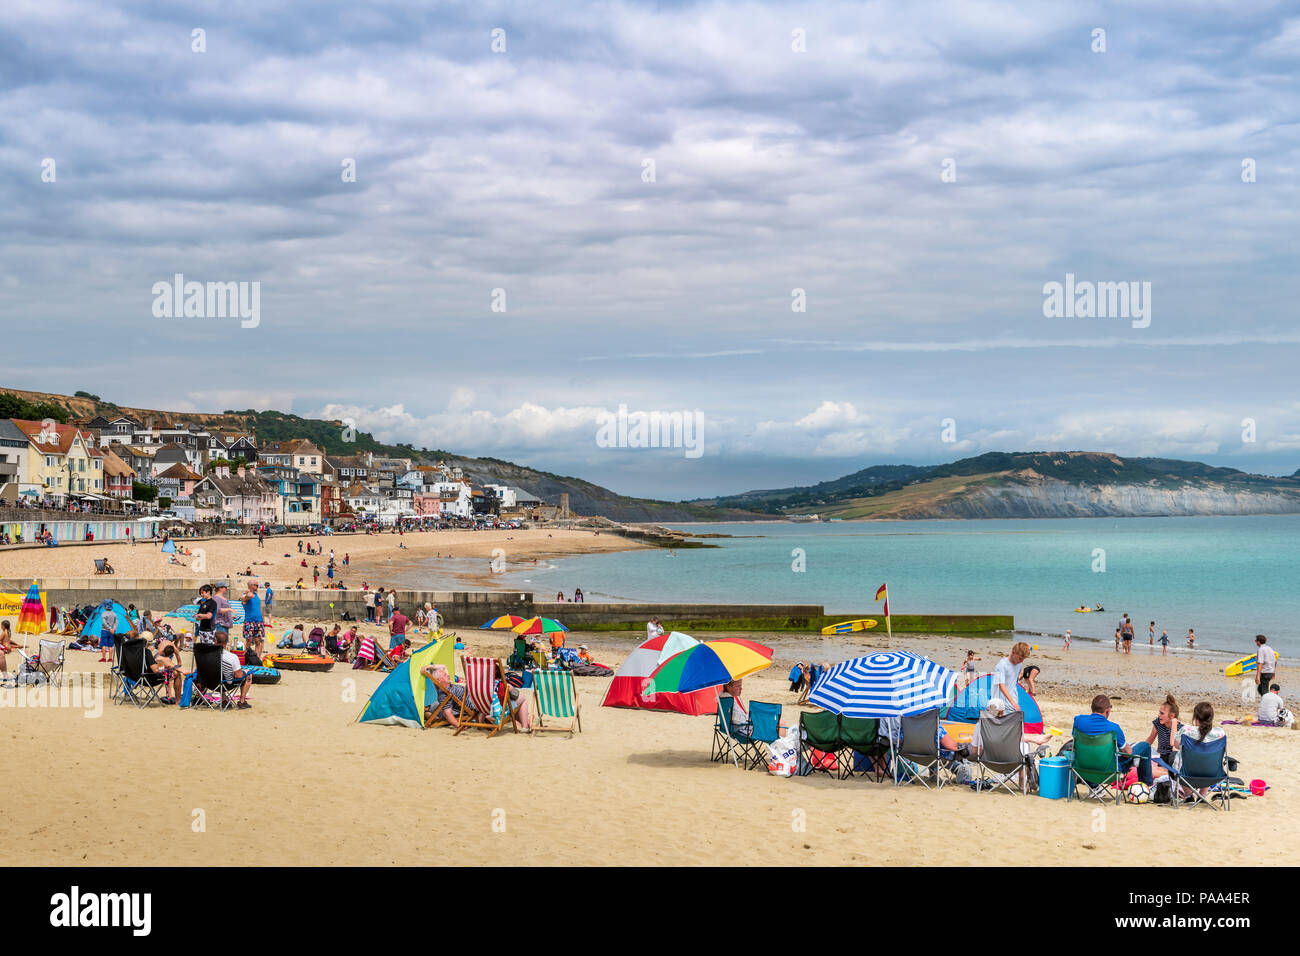 Regno Unito - Previsioni del tempo - come il bel tempo continua nel sud ovest dell'Inghilterra, vacanzieri godere di una calda giornata sulla spiaggia a Lyme Regis nel Dorset. Foto Stock